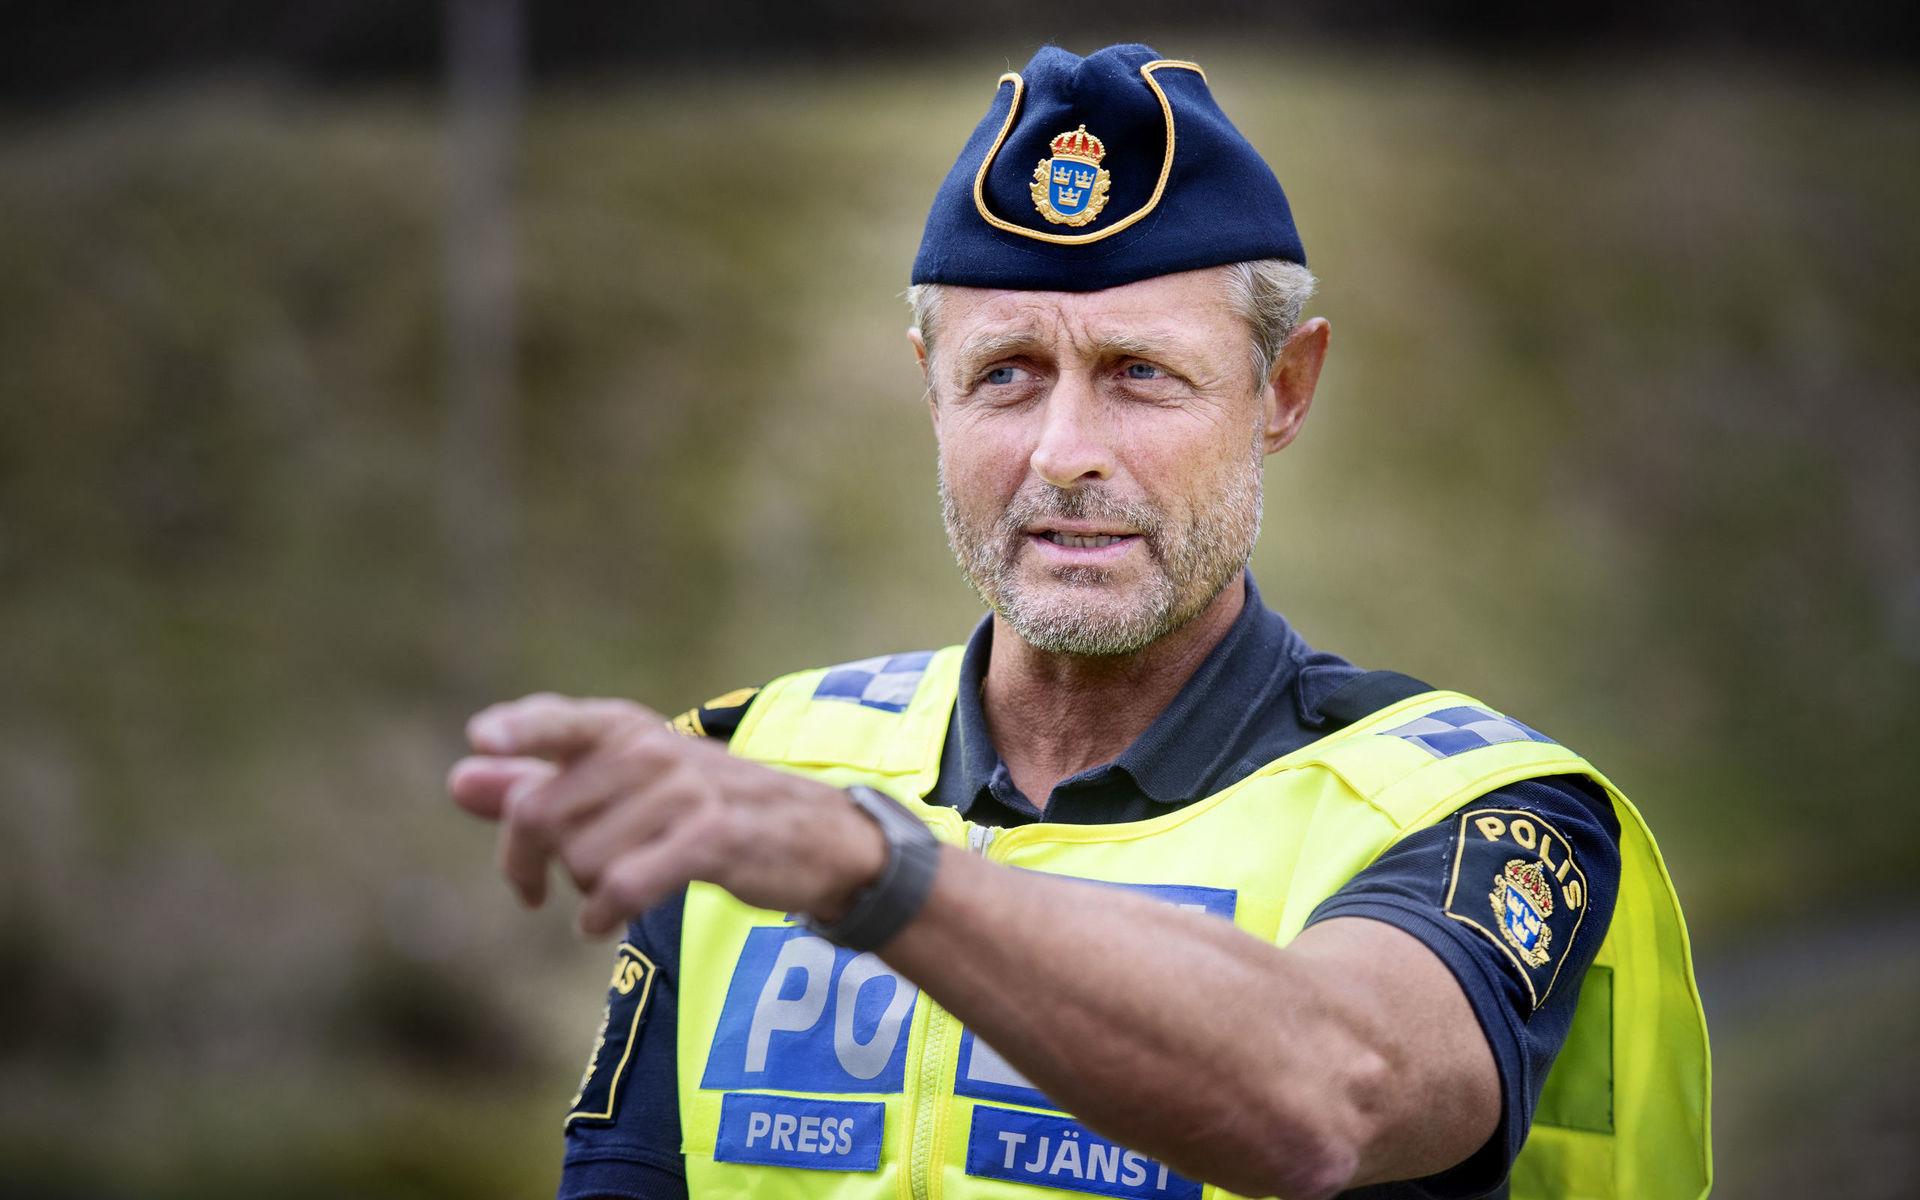 Christer Fuxborg, polisens presstalesperson hoppas och tror att allt kommer gå lugnt till. &quot;Vi hoppas att vi kan genomföra det här så humant som vi bara kan och visa all respekt för de som ska avvisas&quot;, säger han. 